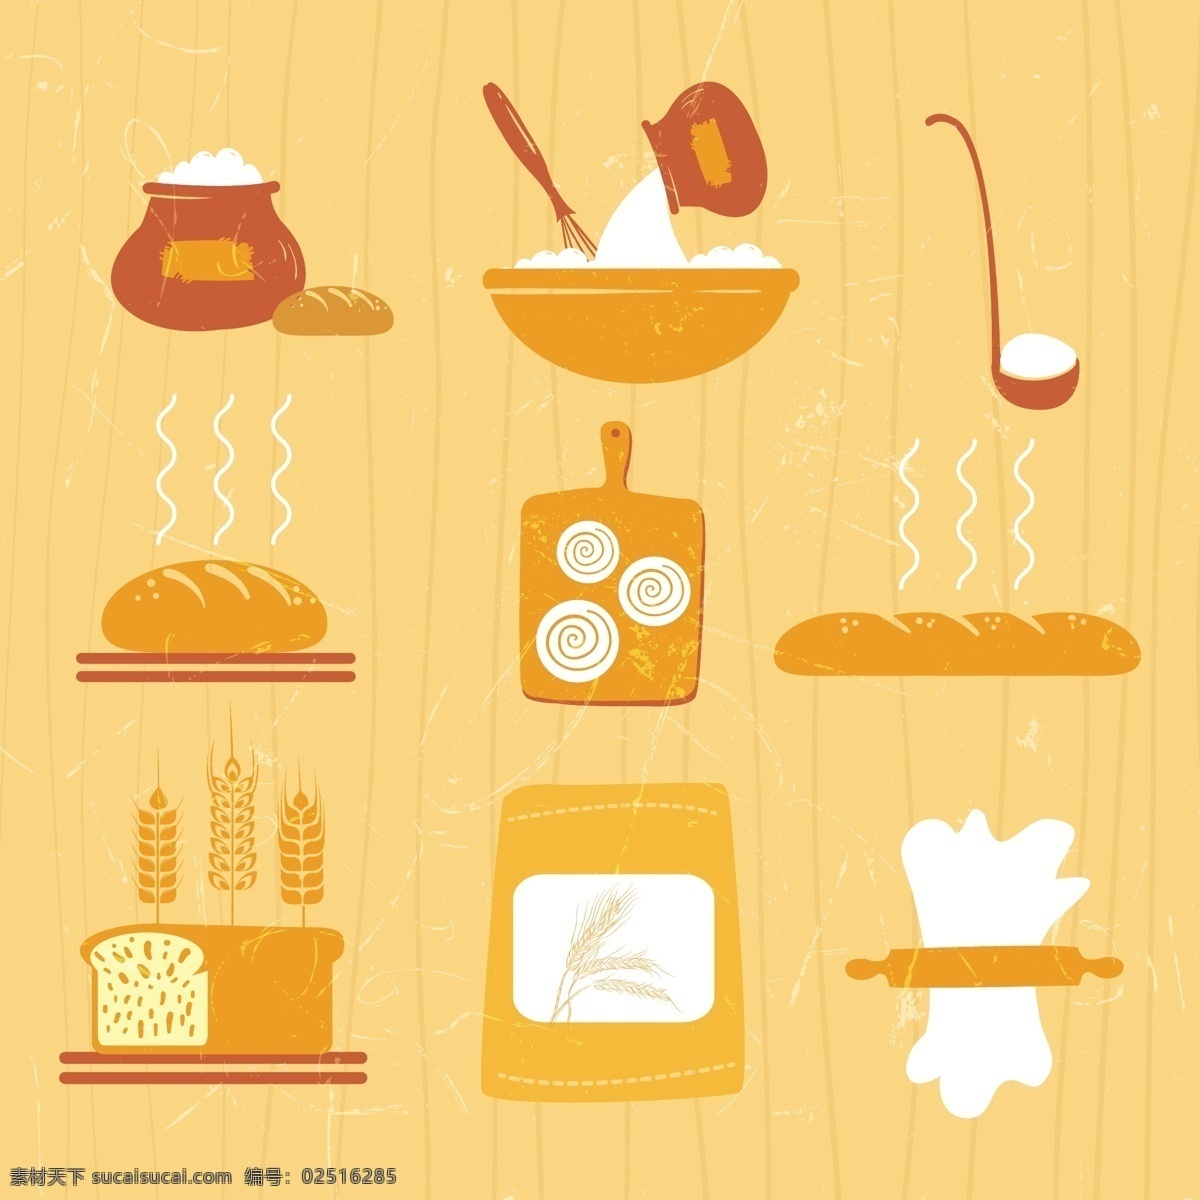 食物 美食 图标 矢量 大米 汉堡 米 米饭 面包 食材 矢量素材 小麦